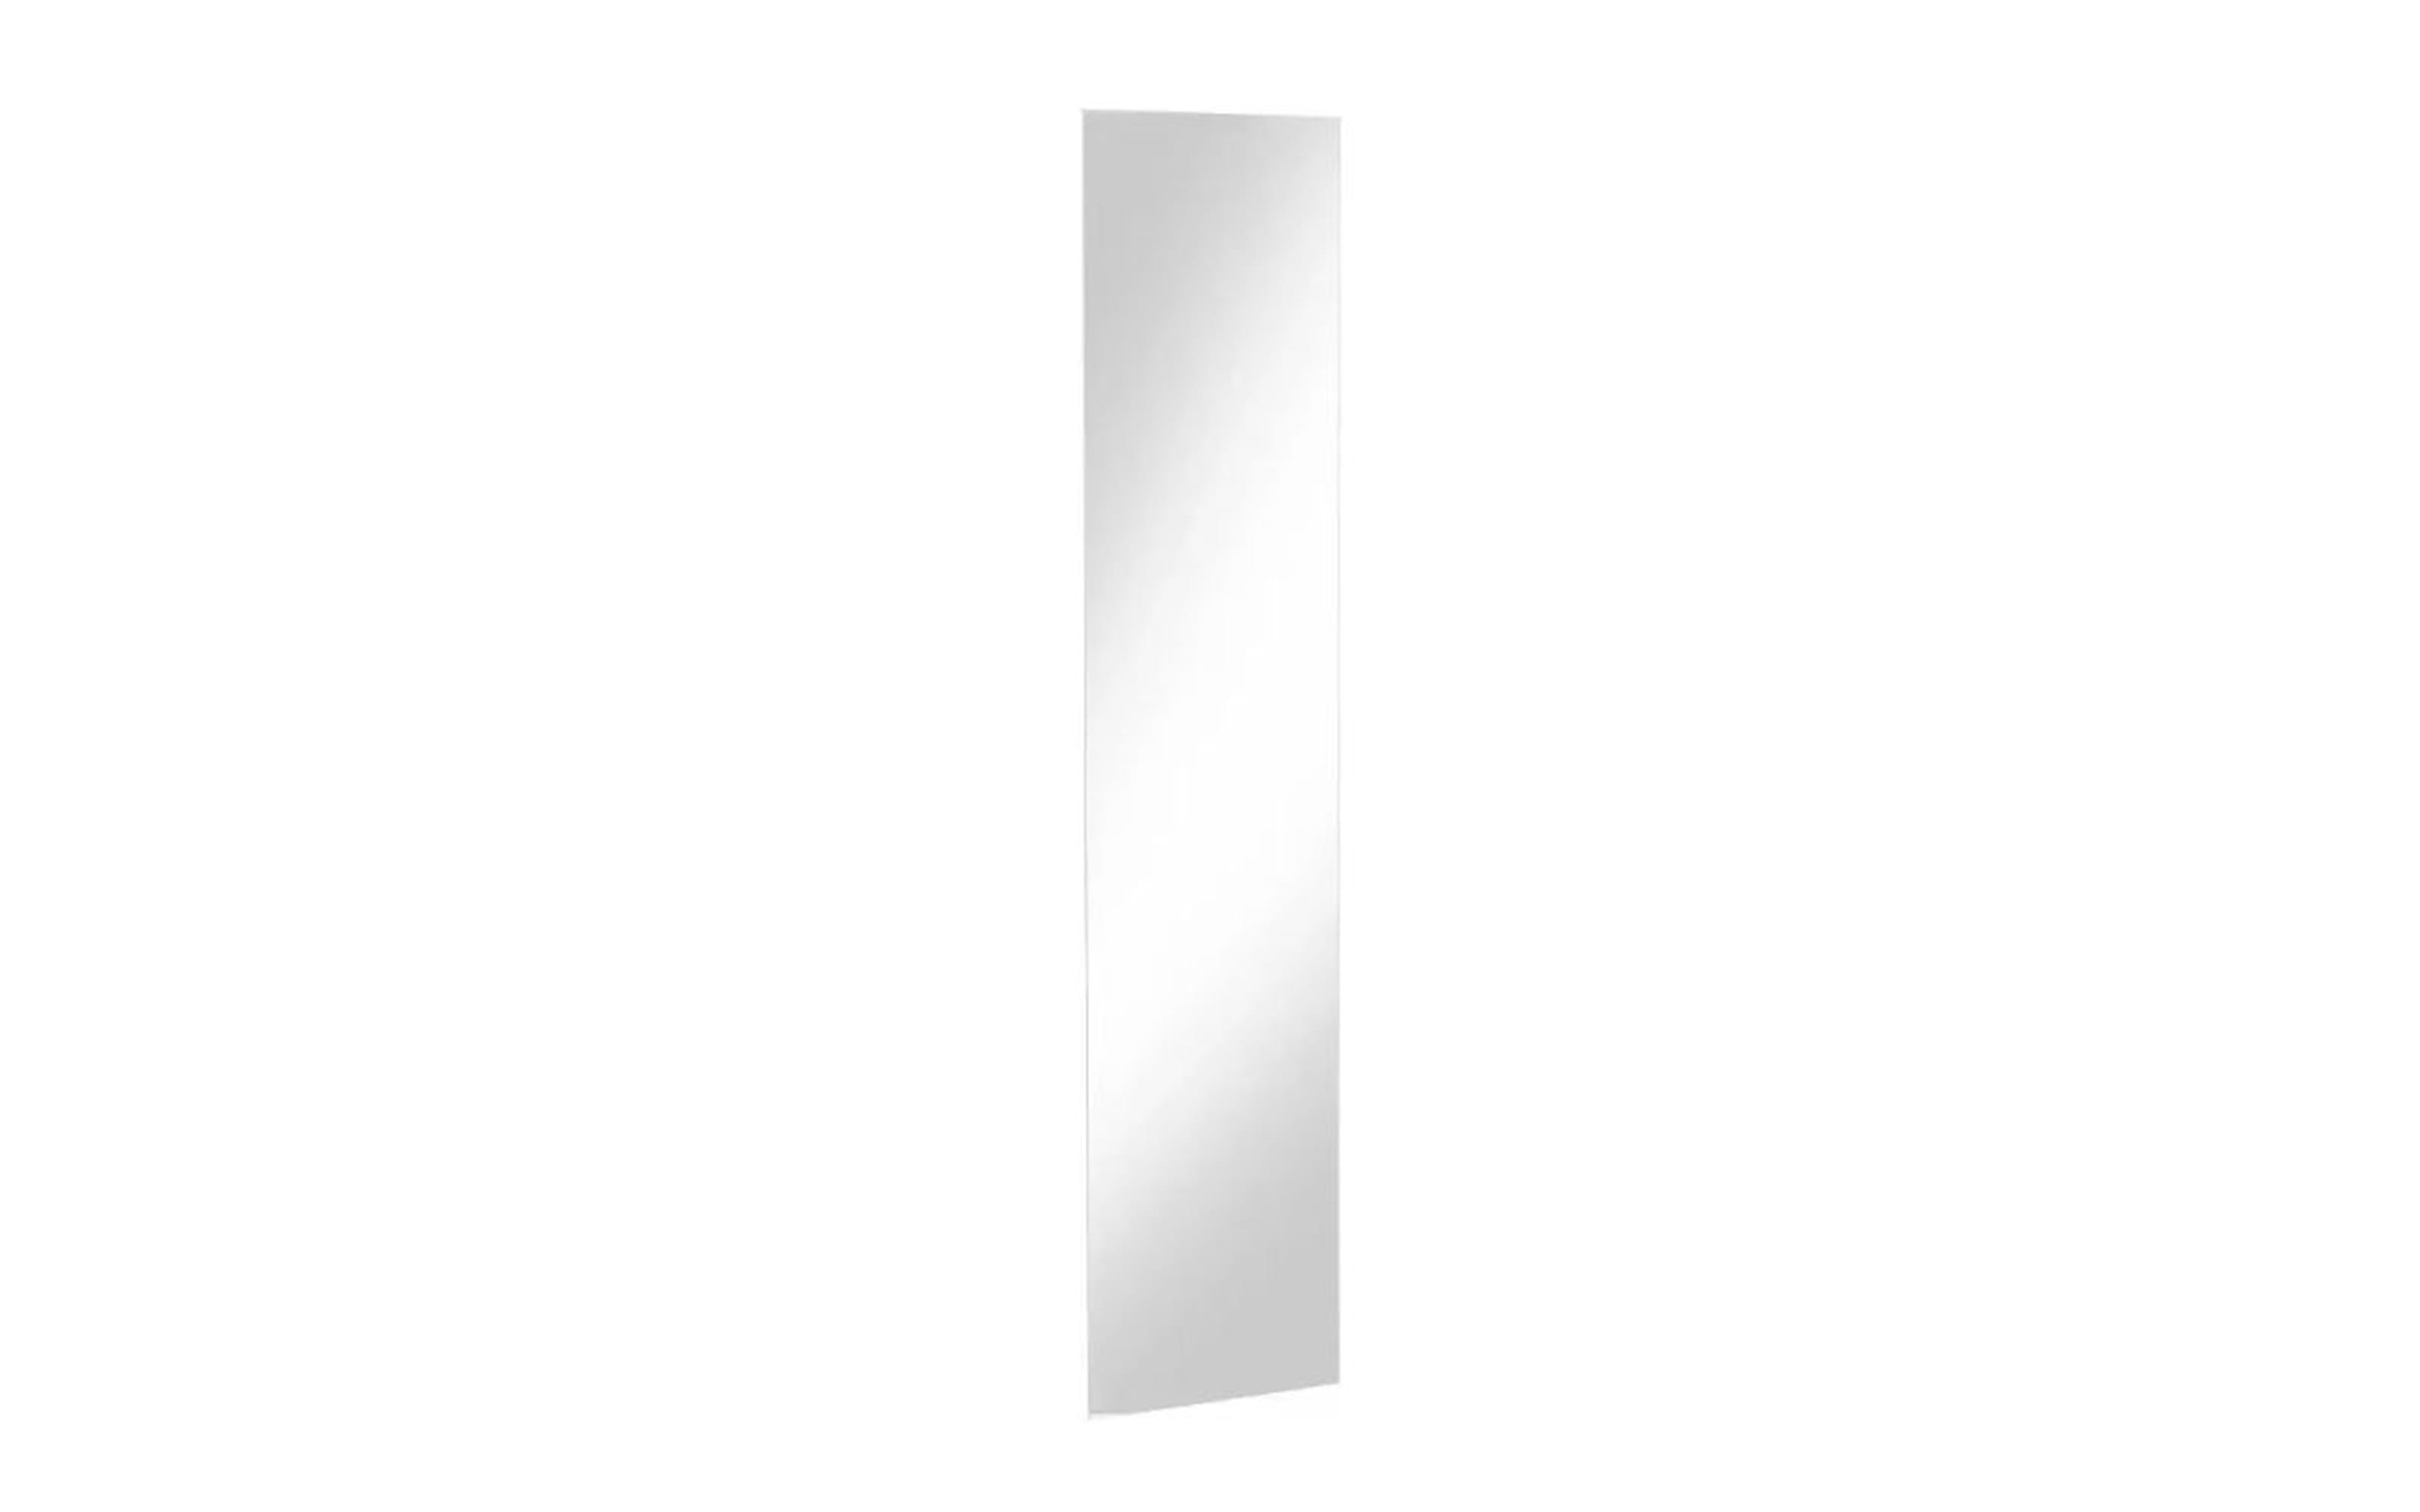 Spiegel 920 Multiraumkonzept, klar, 31 x 134 cm 